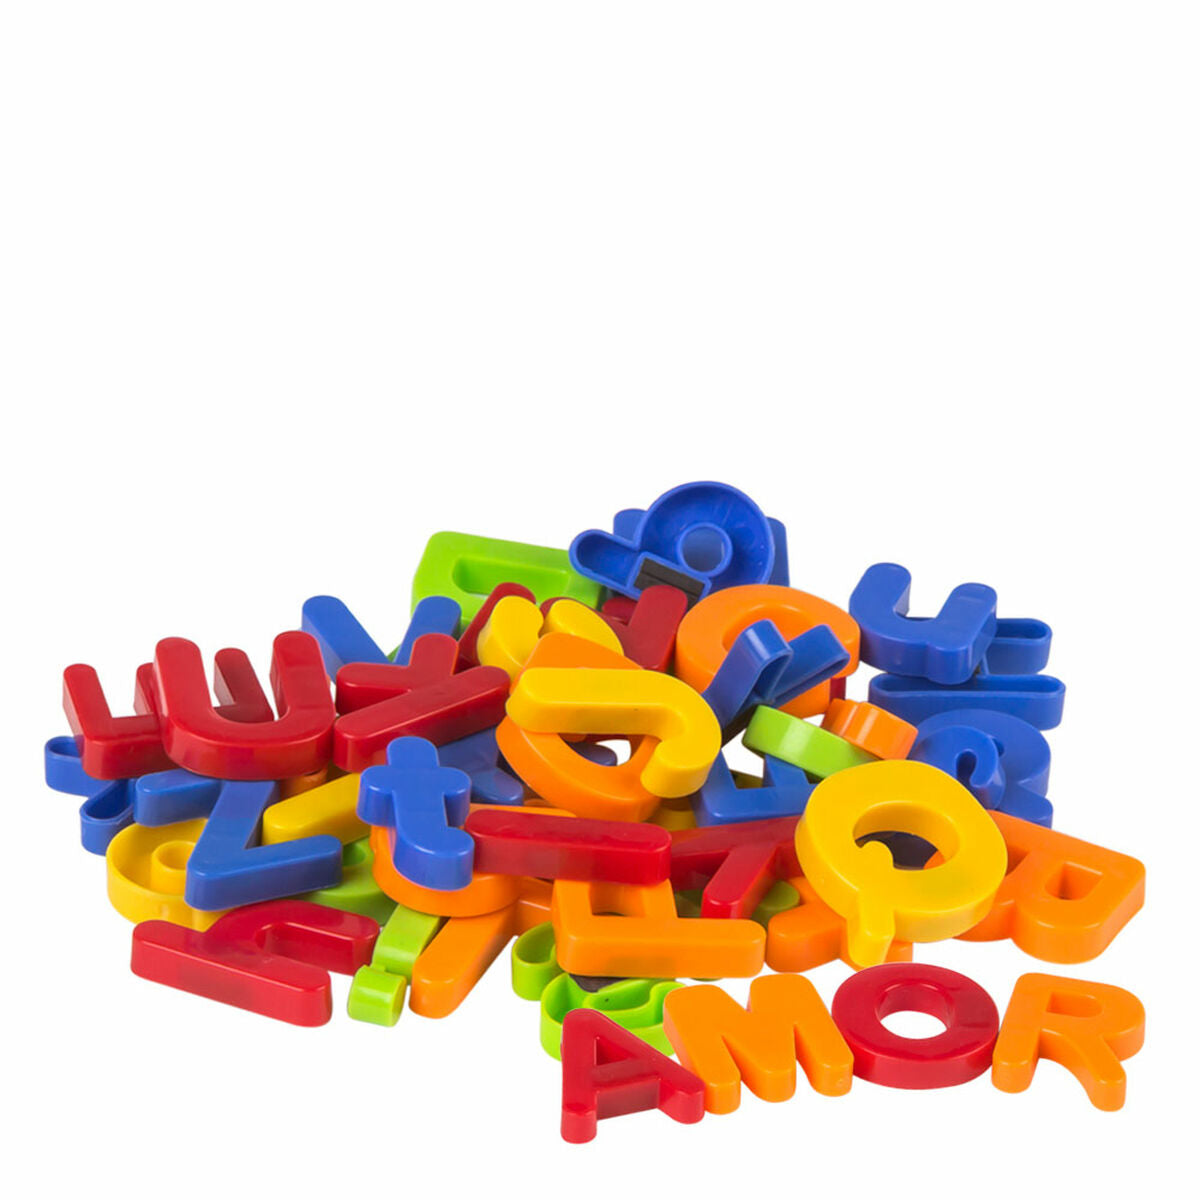 Magnetspiel Colorbaby Good idea letras y numeros 2 x 3 x 0,5 cm (12 Stück)